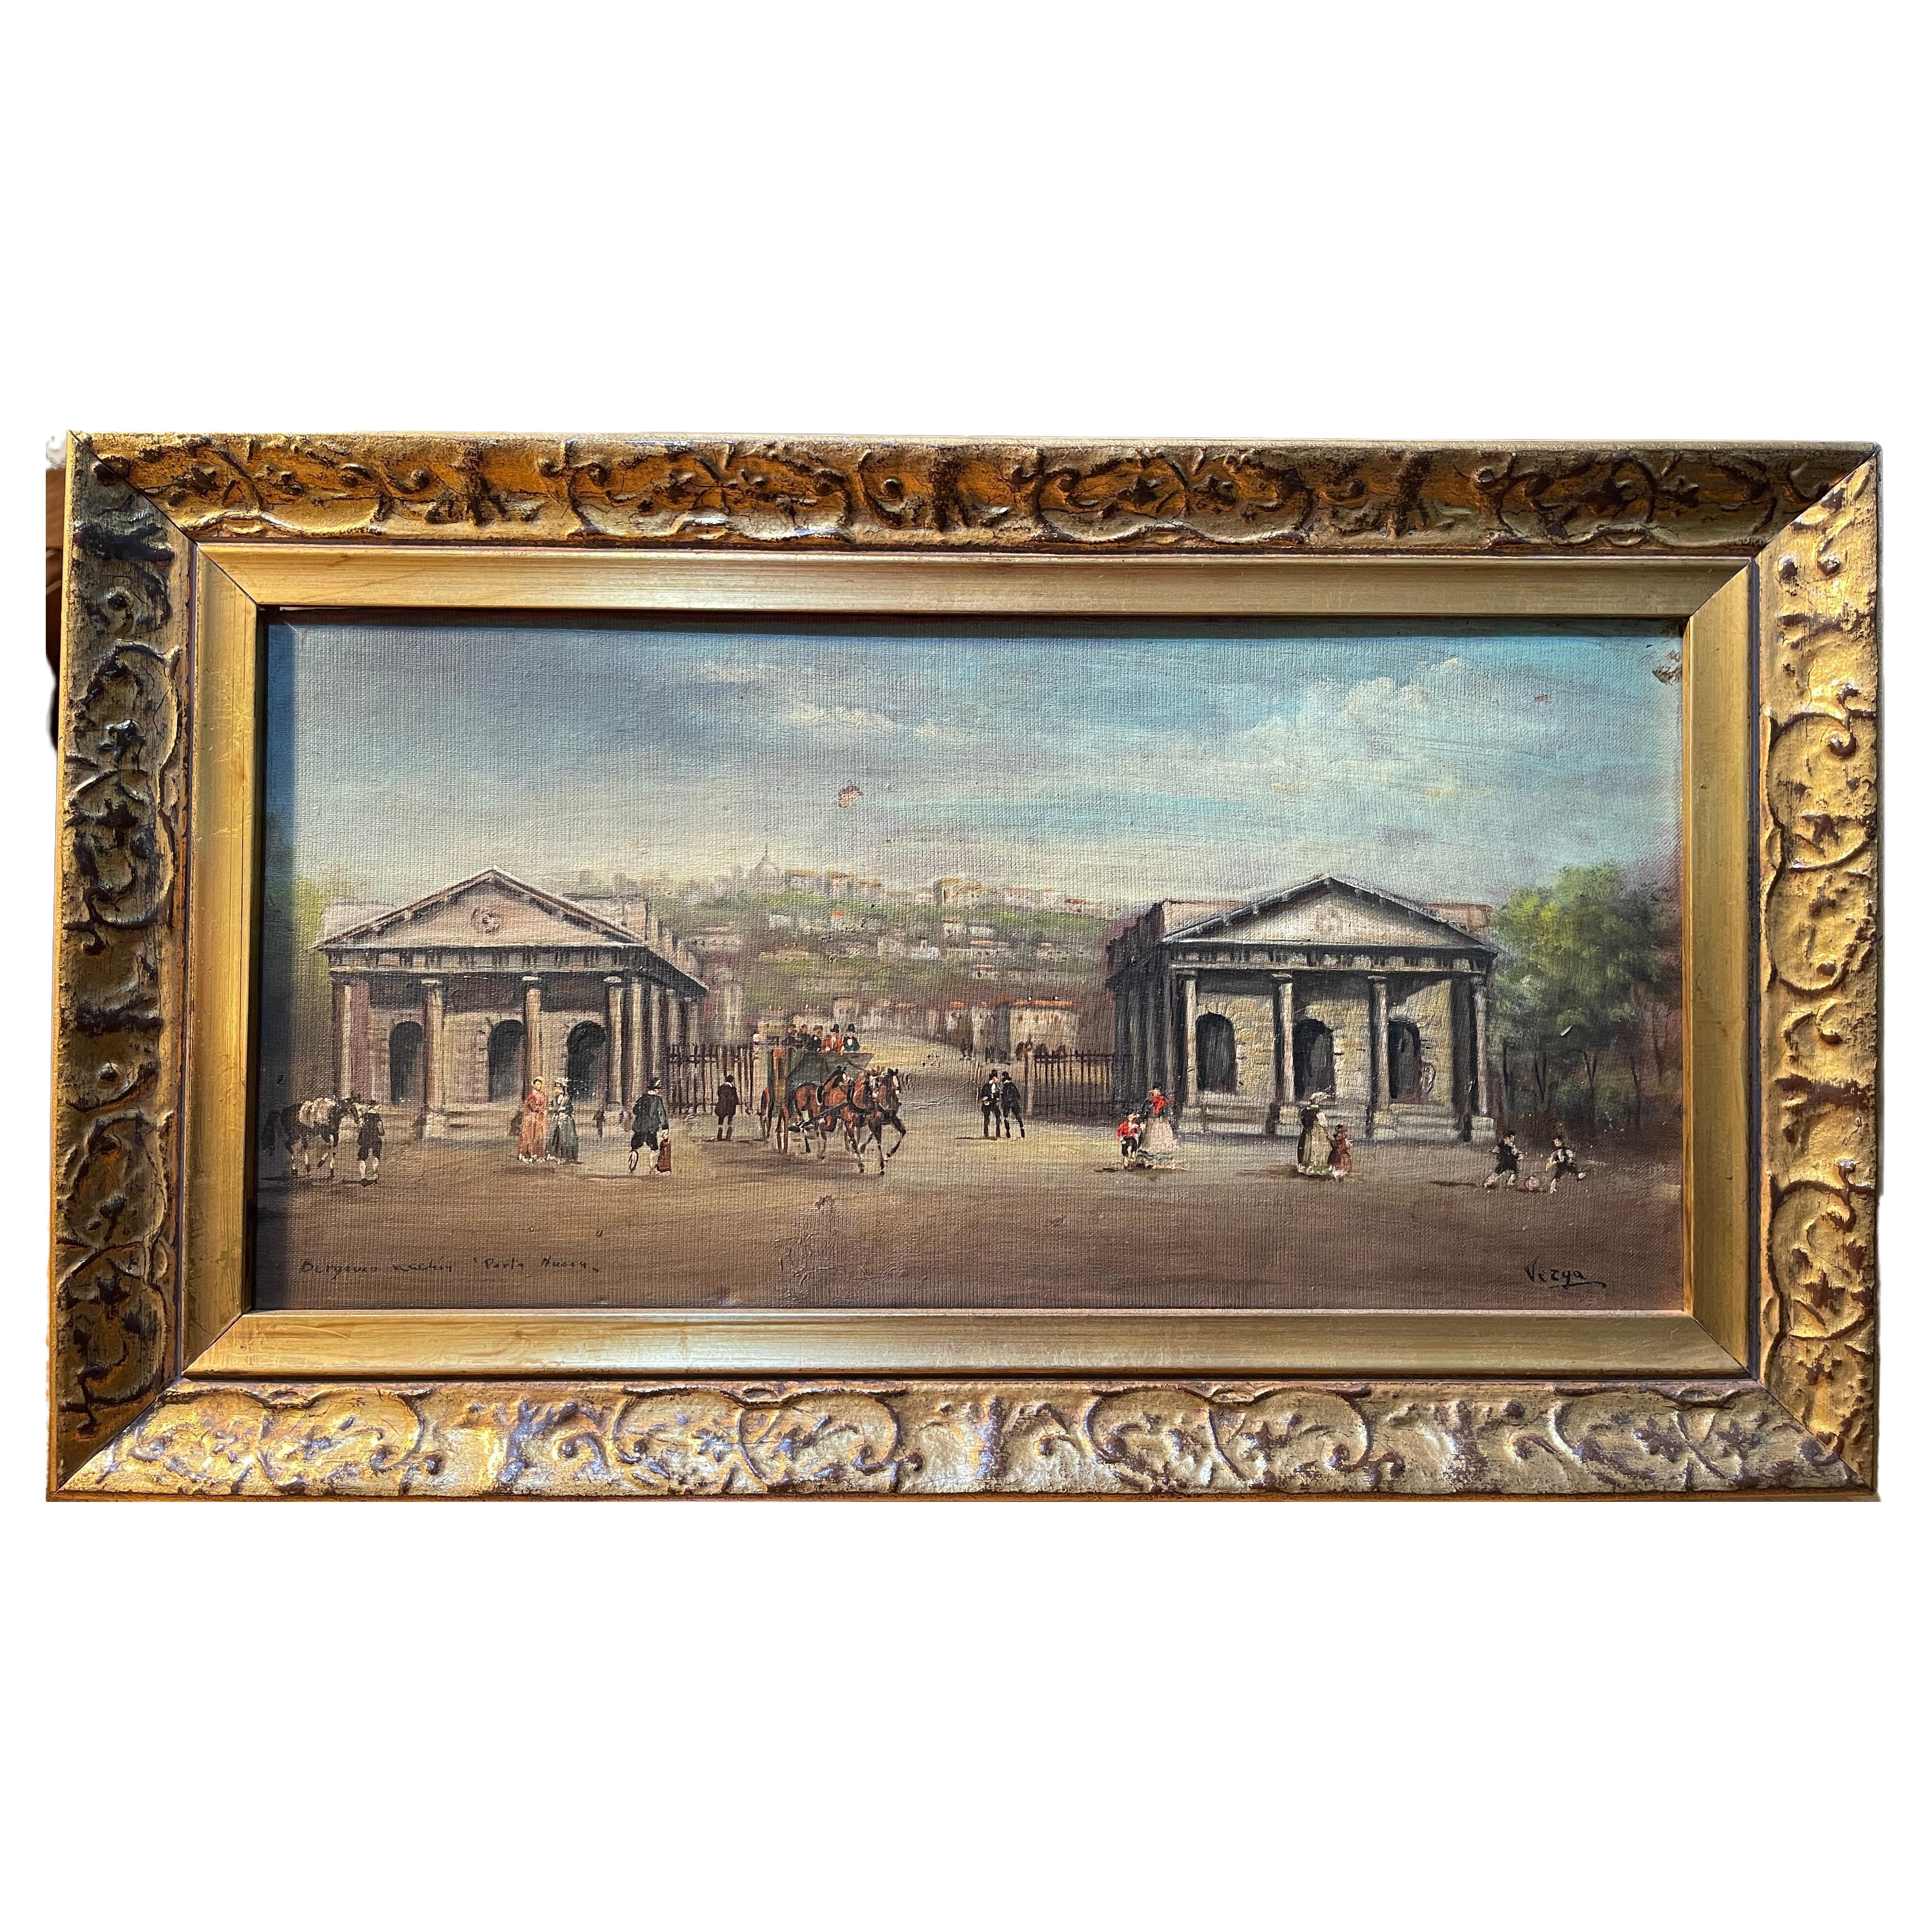 Ölgemälde auf Tafel, 20. Jahrhundert, Vergani, Landschaft, Landschaft